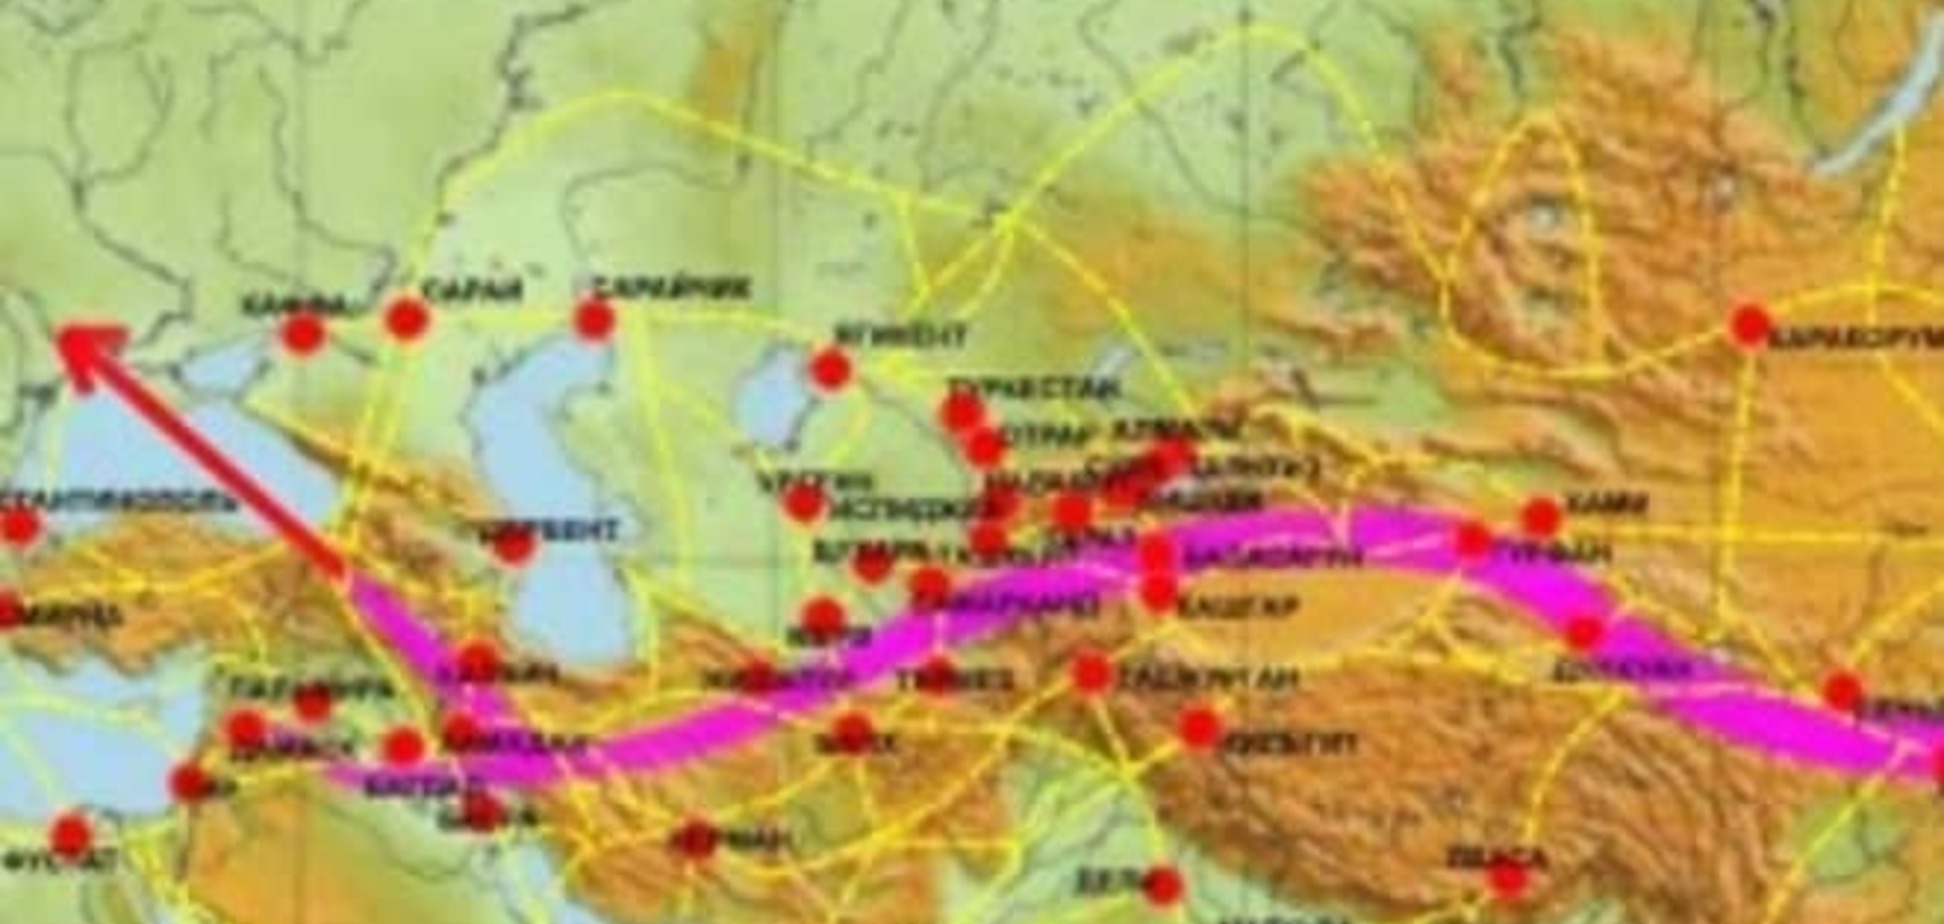 Британия готовит 'новый шелковый путь' на юге Украины до 2020 года